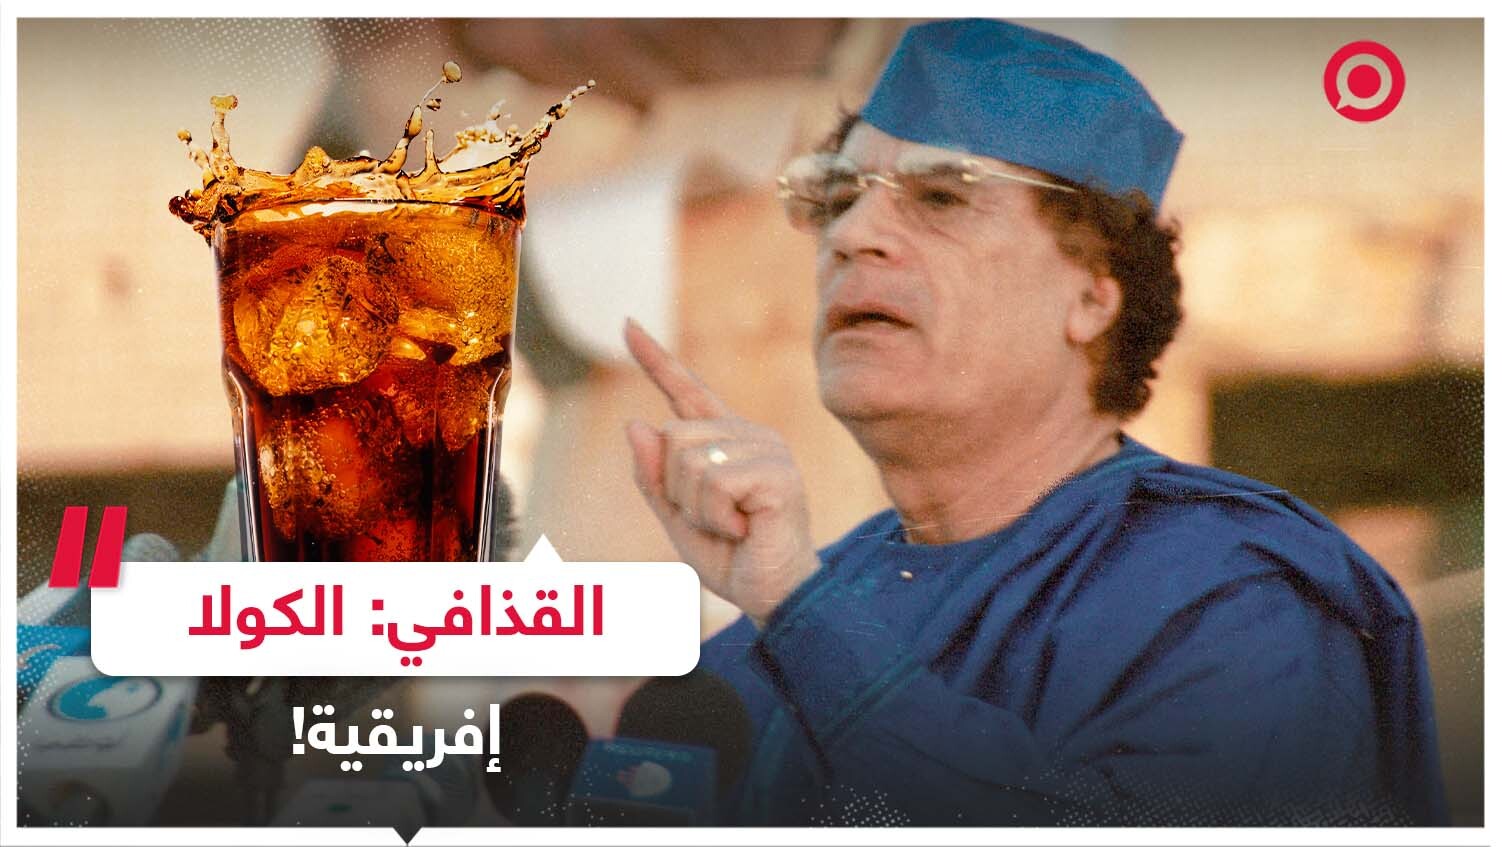 القذافي: الكولا إفريقية!